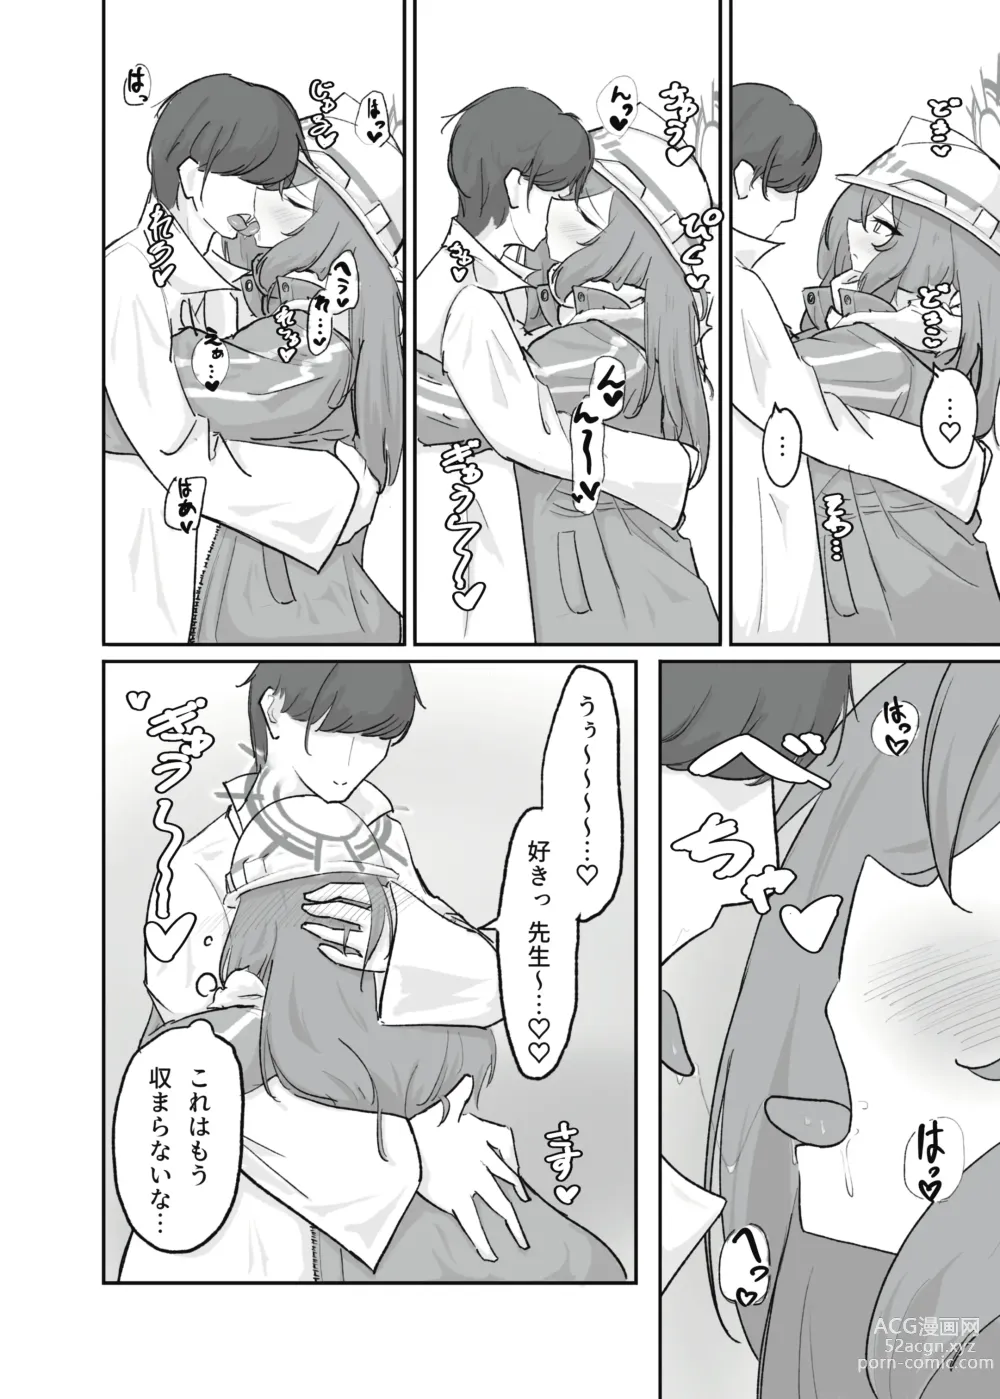 Page 9 of doujinshi Atsugi Kkutsu ga Niau Onna